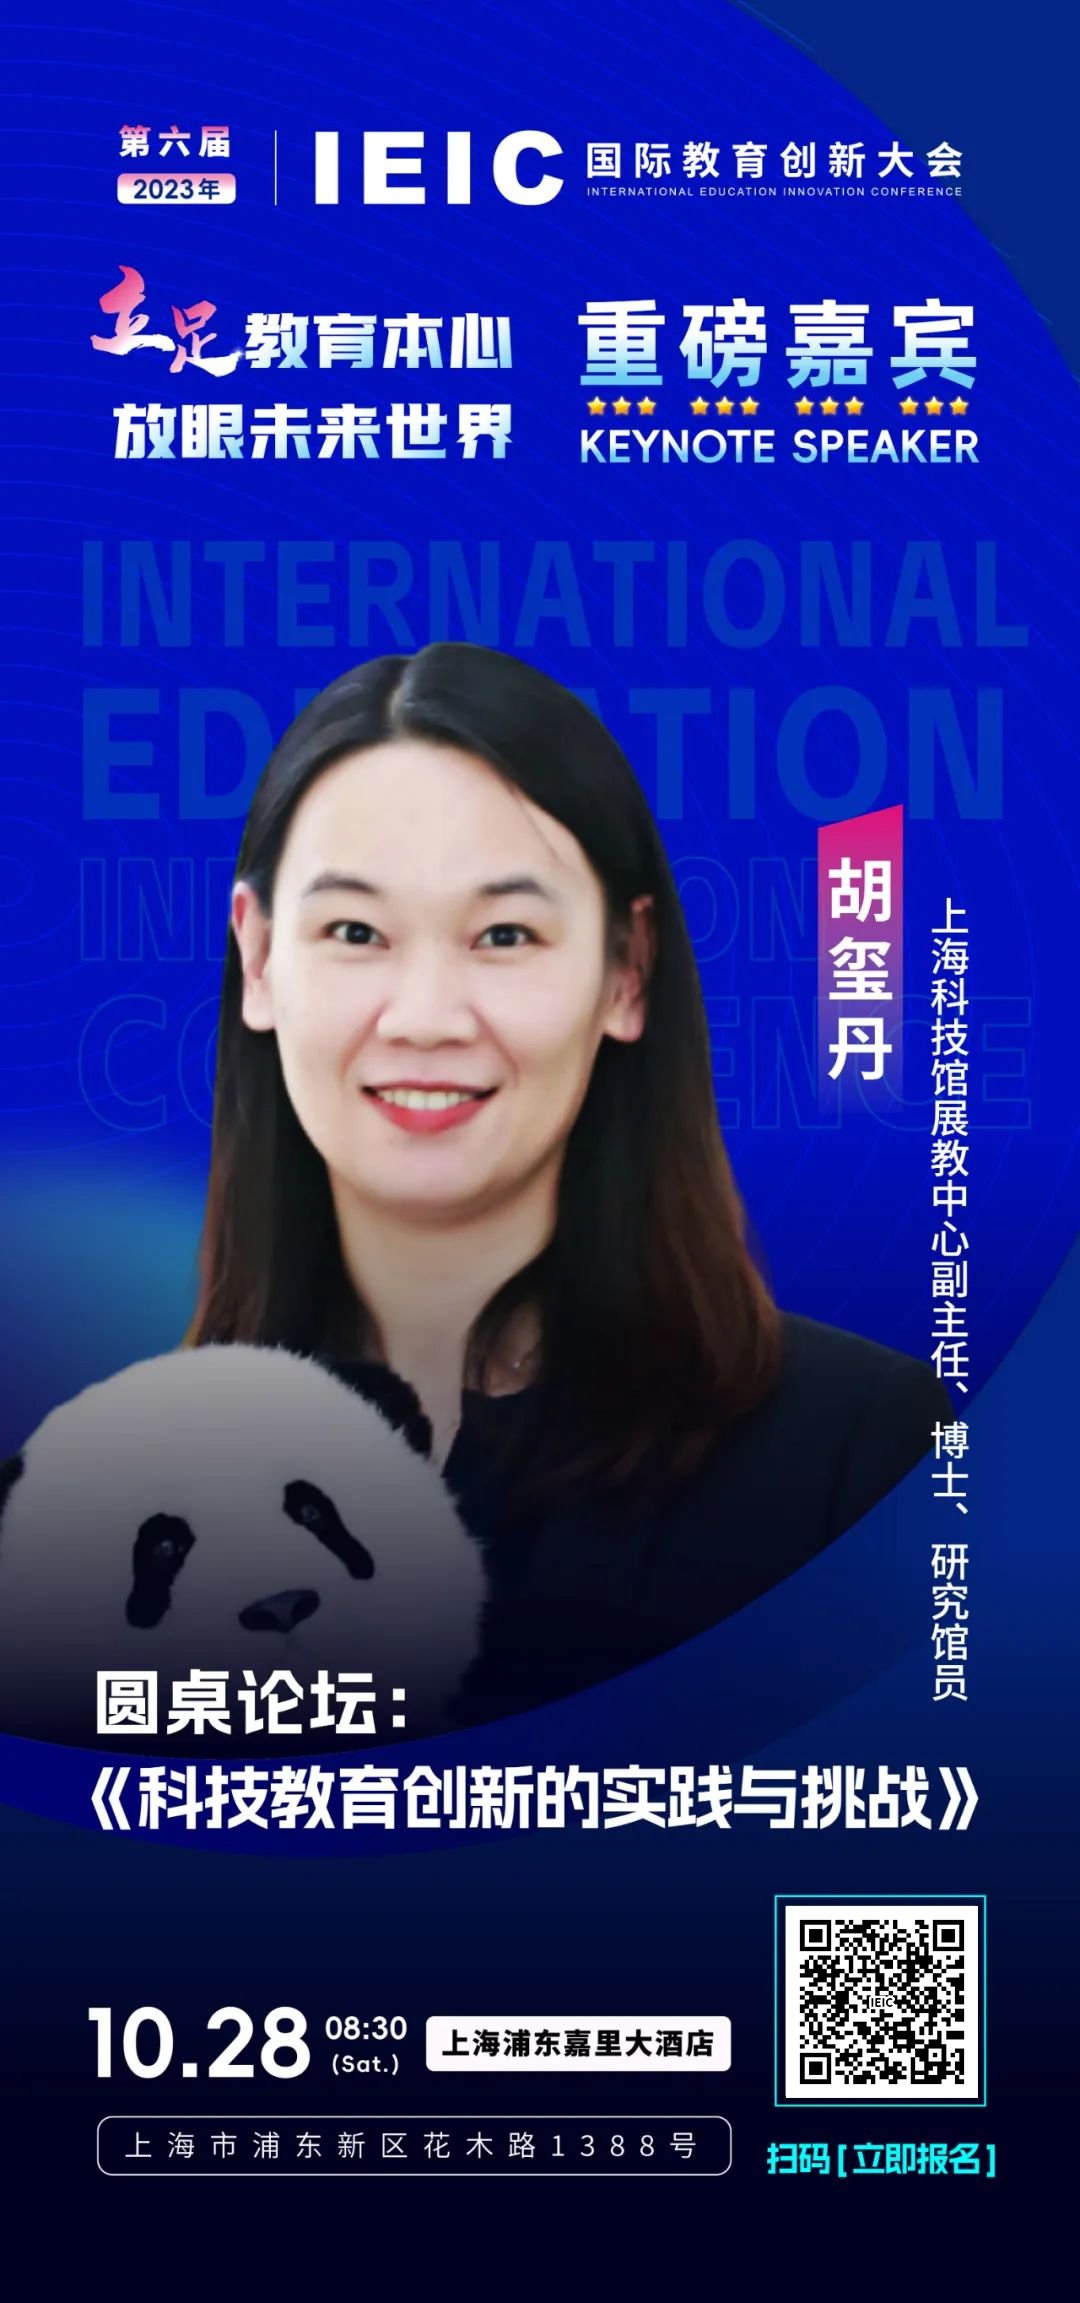 上海科技馆展教中心副主任胡玺丹将出席第六届IEIC国际教育创新大会